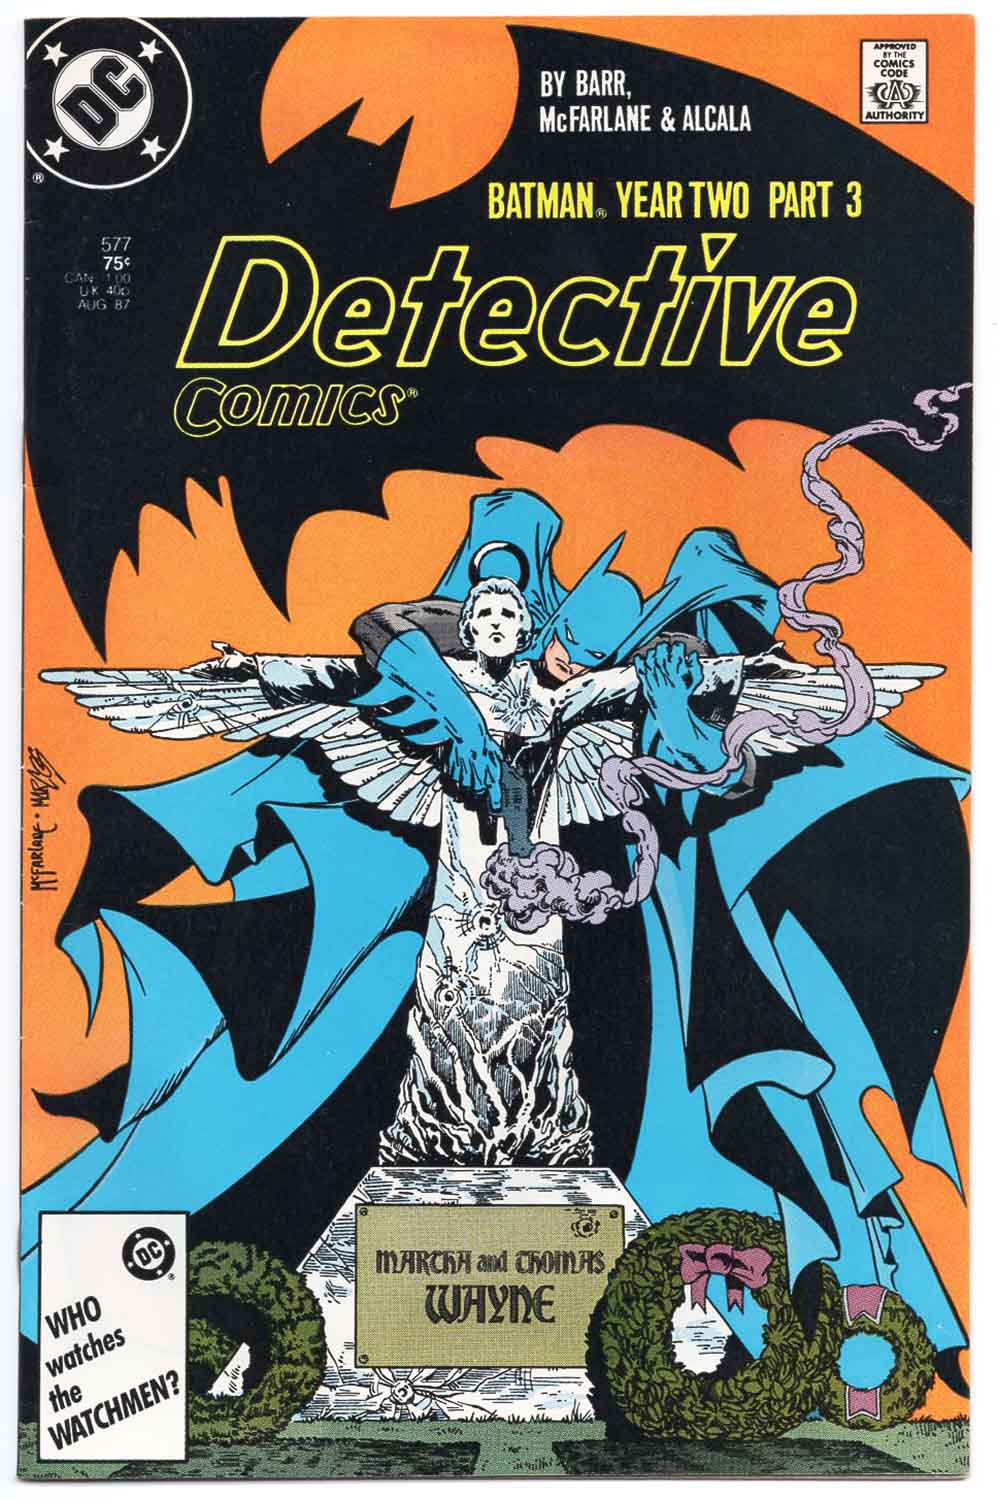 Detective Comics #577